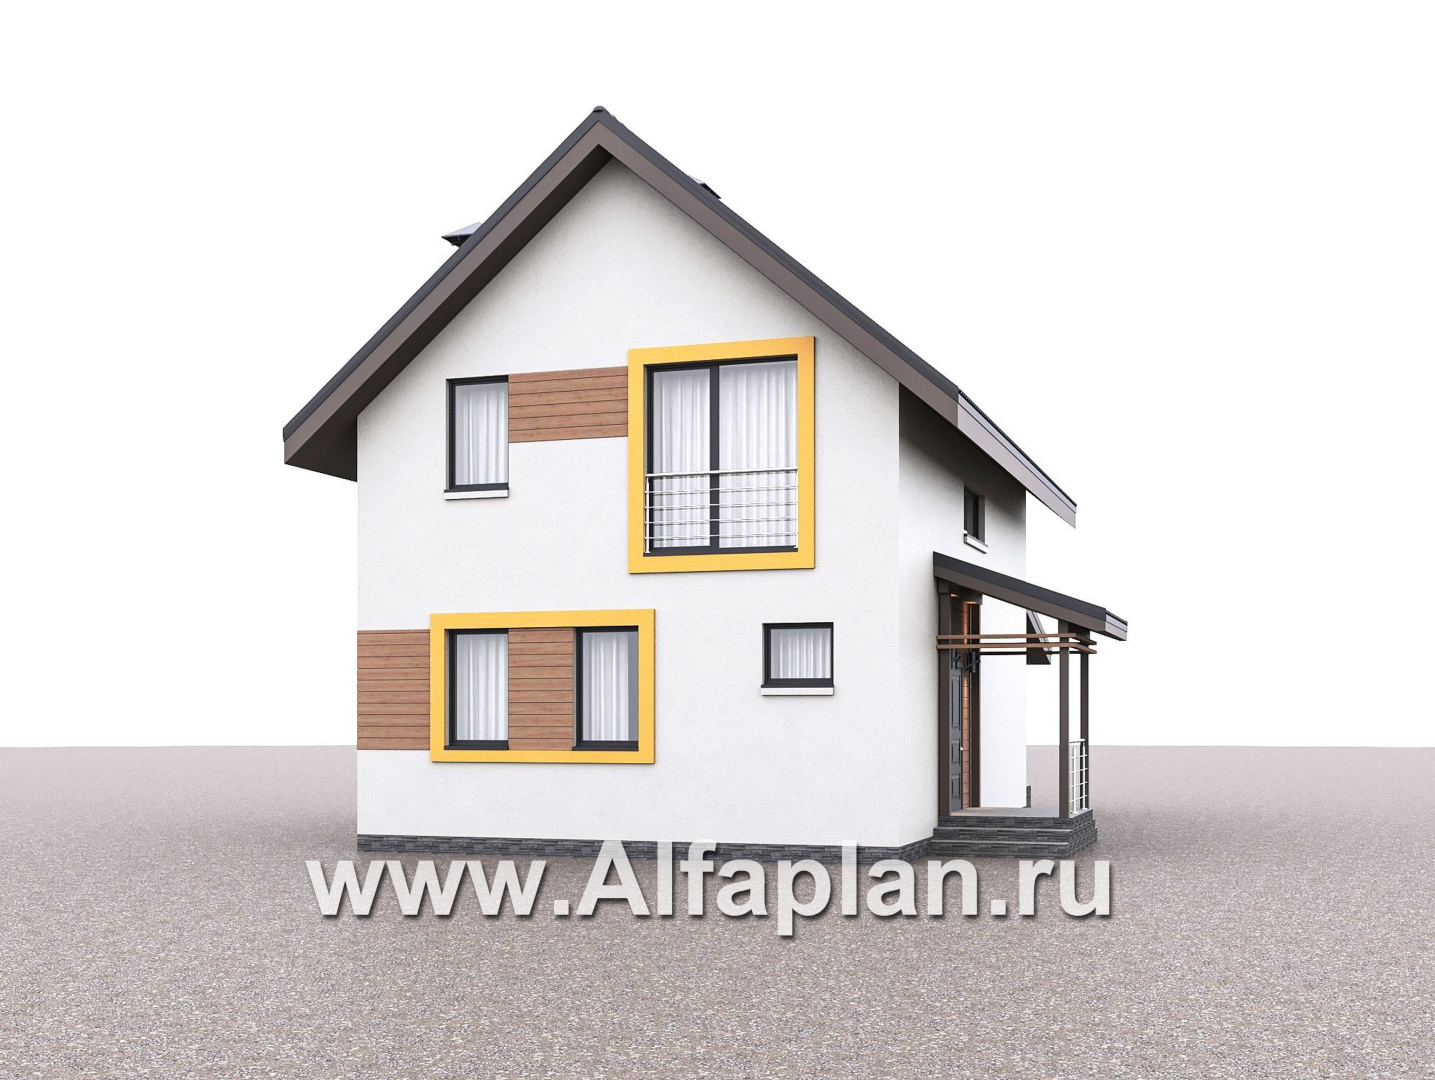 «Викинг» - проект дома, 2 этажа, с сауной и с террасой, в скандинавском стиле - дизайн дома №1